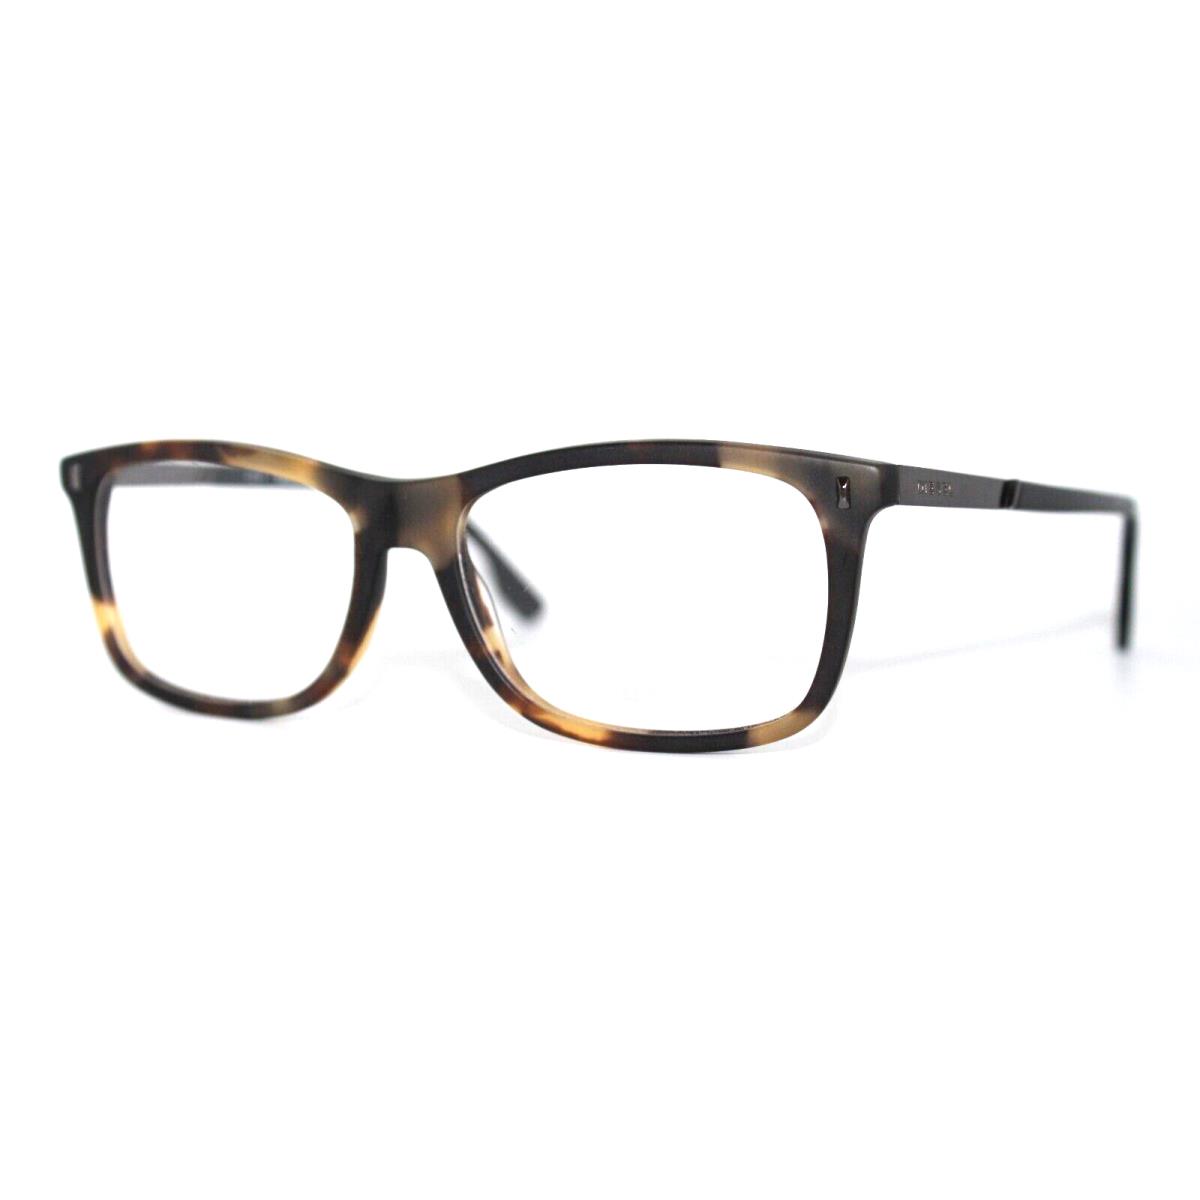 Diesel DL5199 055 Havana Eyeglasses Frames 53-15-145MM W/case